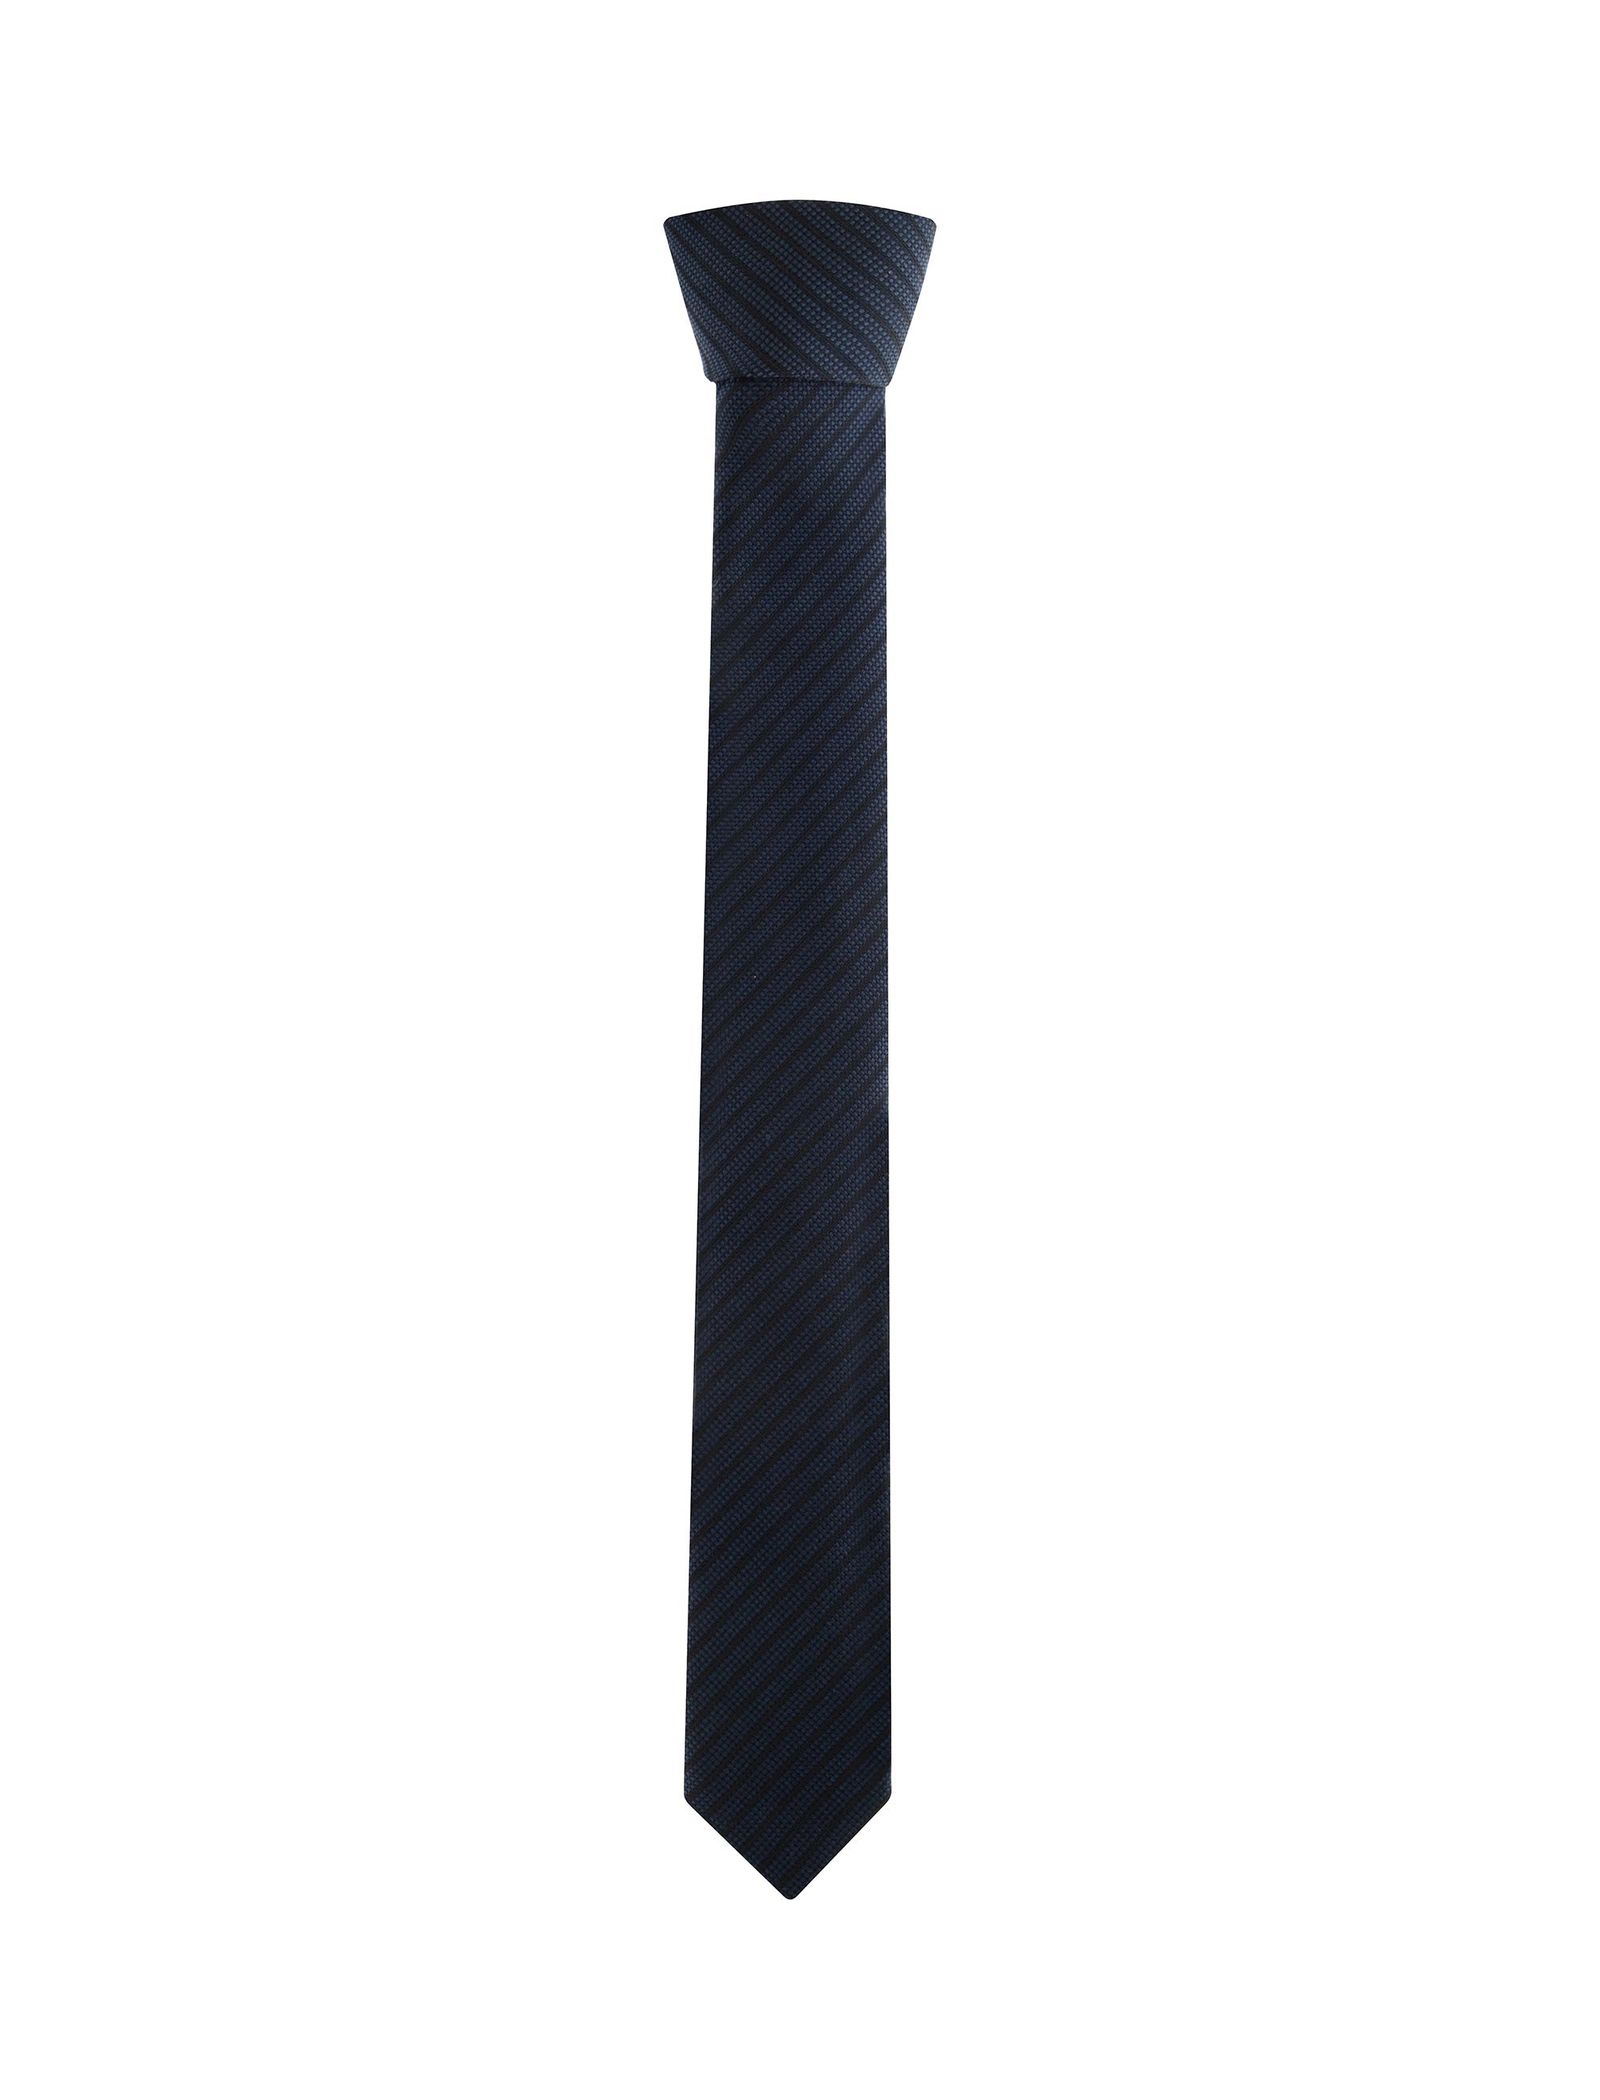 کراوات طرح دار مردانه - یوپیم - آبي - 2